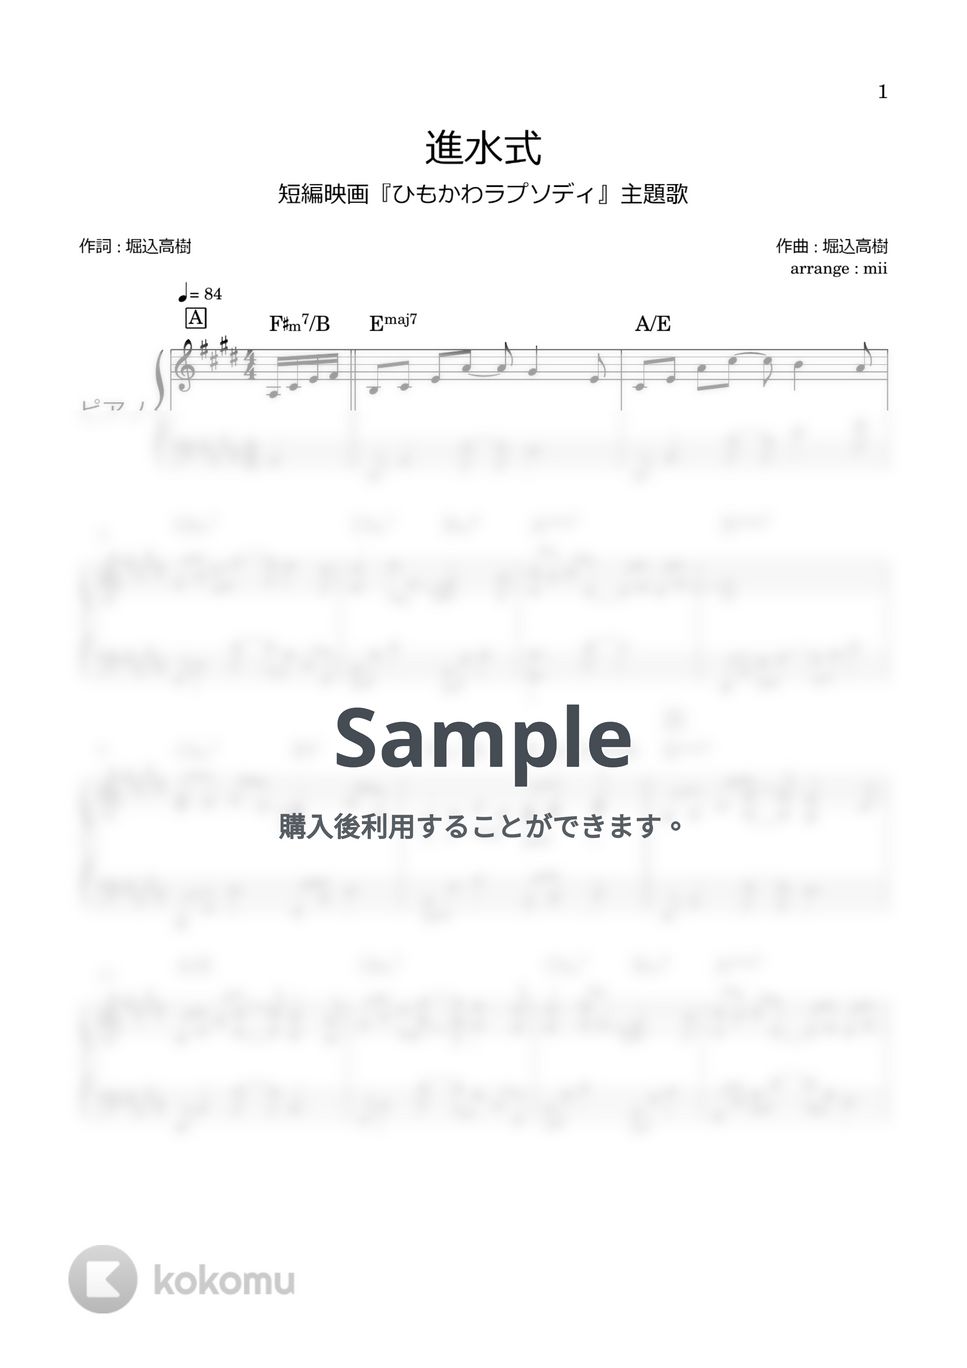 キリンジ - 進水式 by miiの楽譜棚